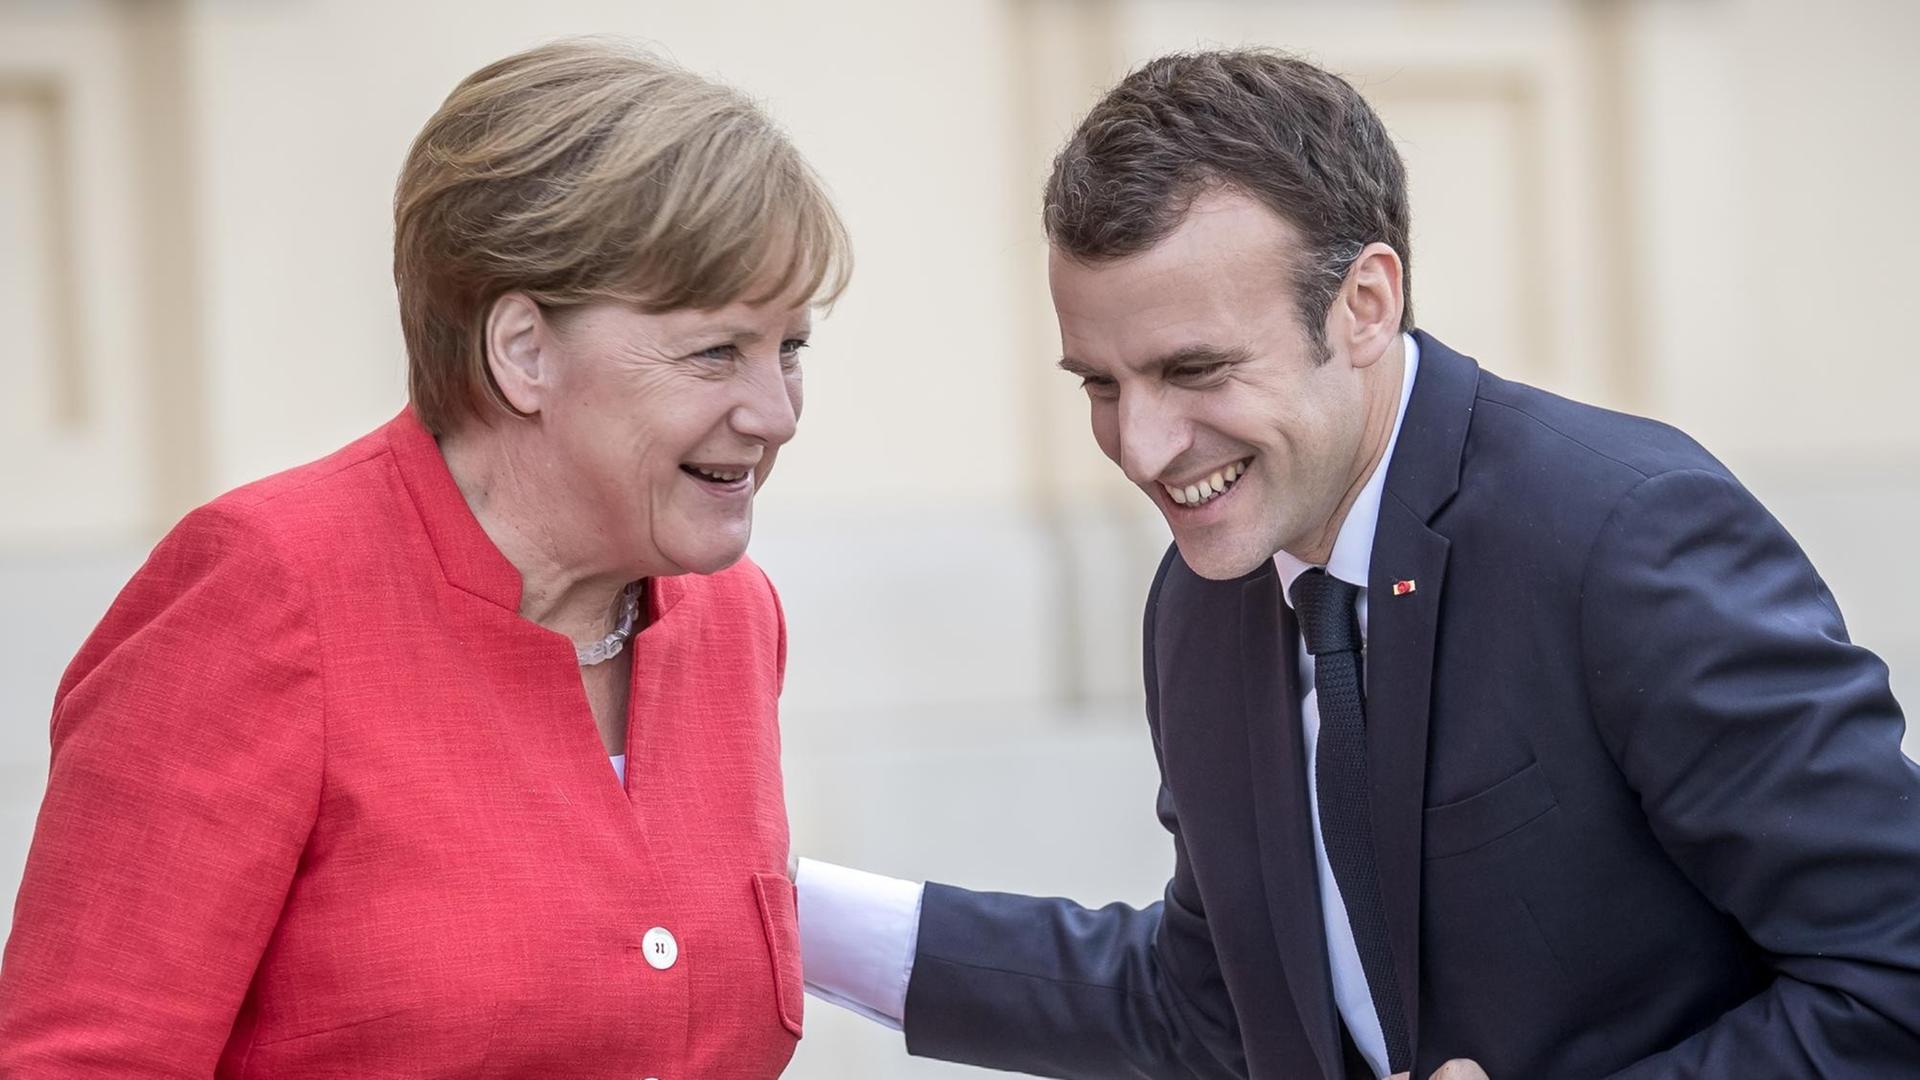 Bundeskanzlerin Angela Merkel (CDU) begrüßt den französischen Präsidenten Emmanuel Macron im Humboldt-Forum im Berliner Schloss.